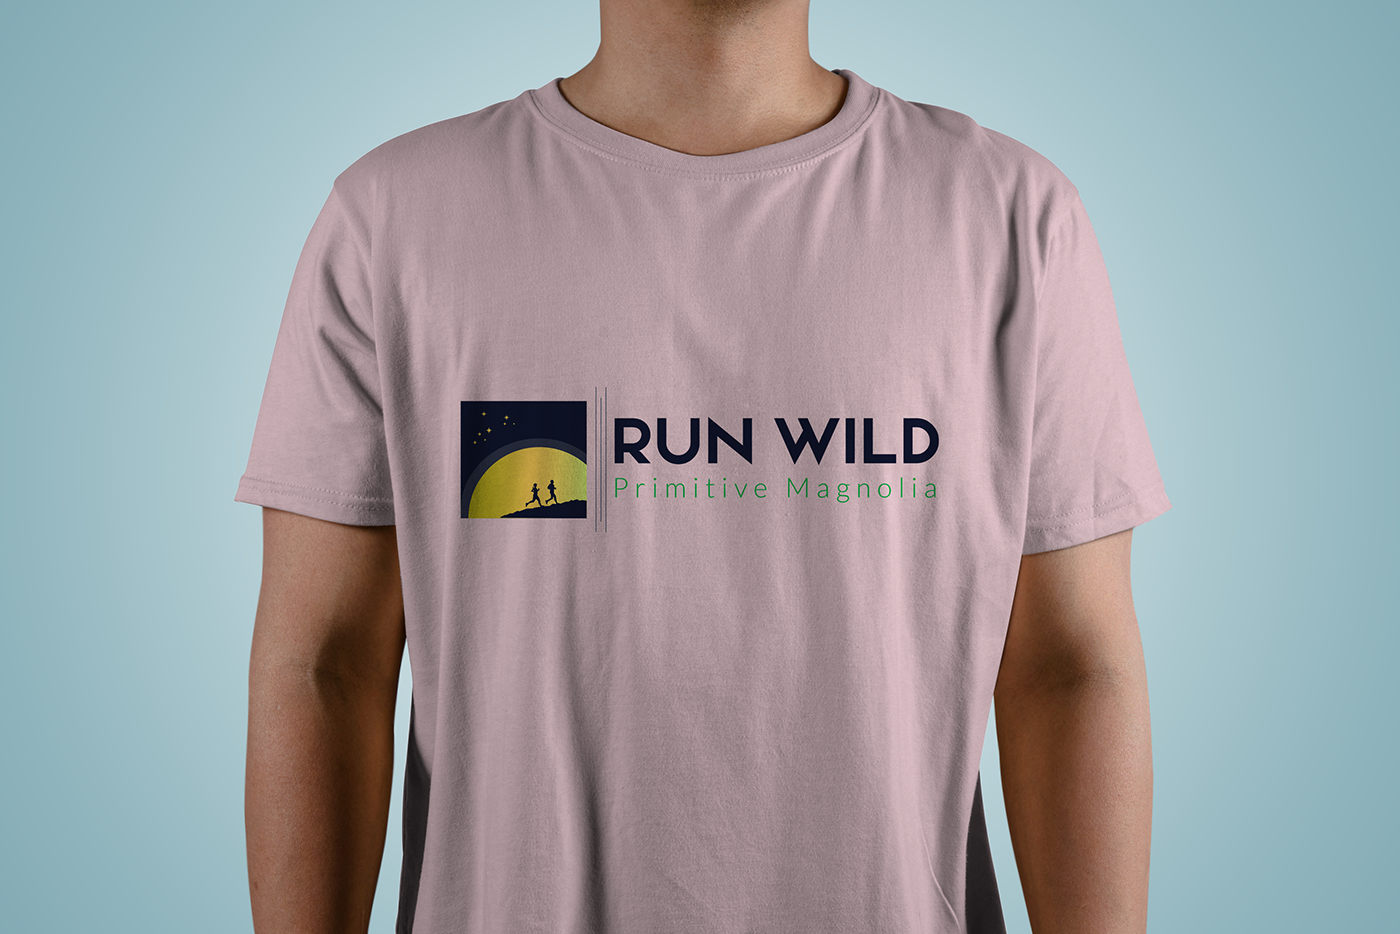 run wild logo shillout Logo Design Landscape pro professional